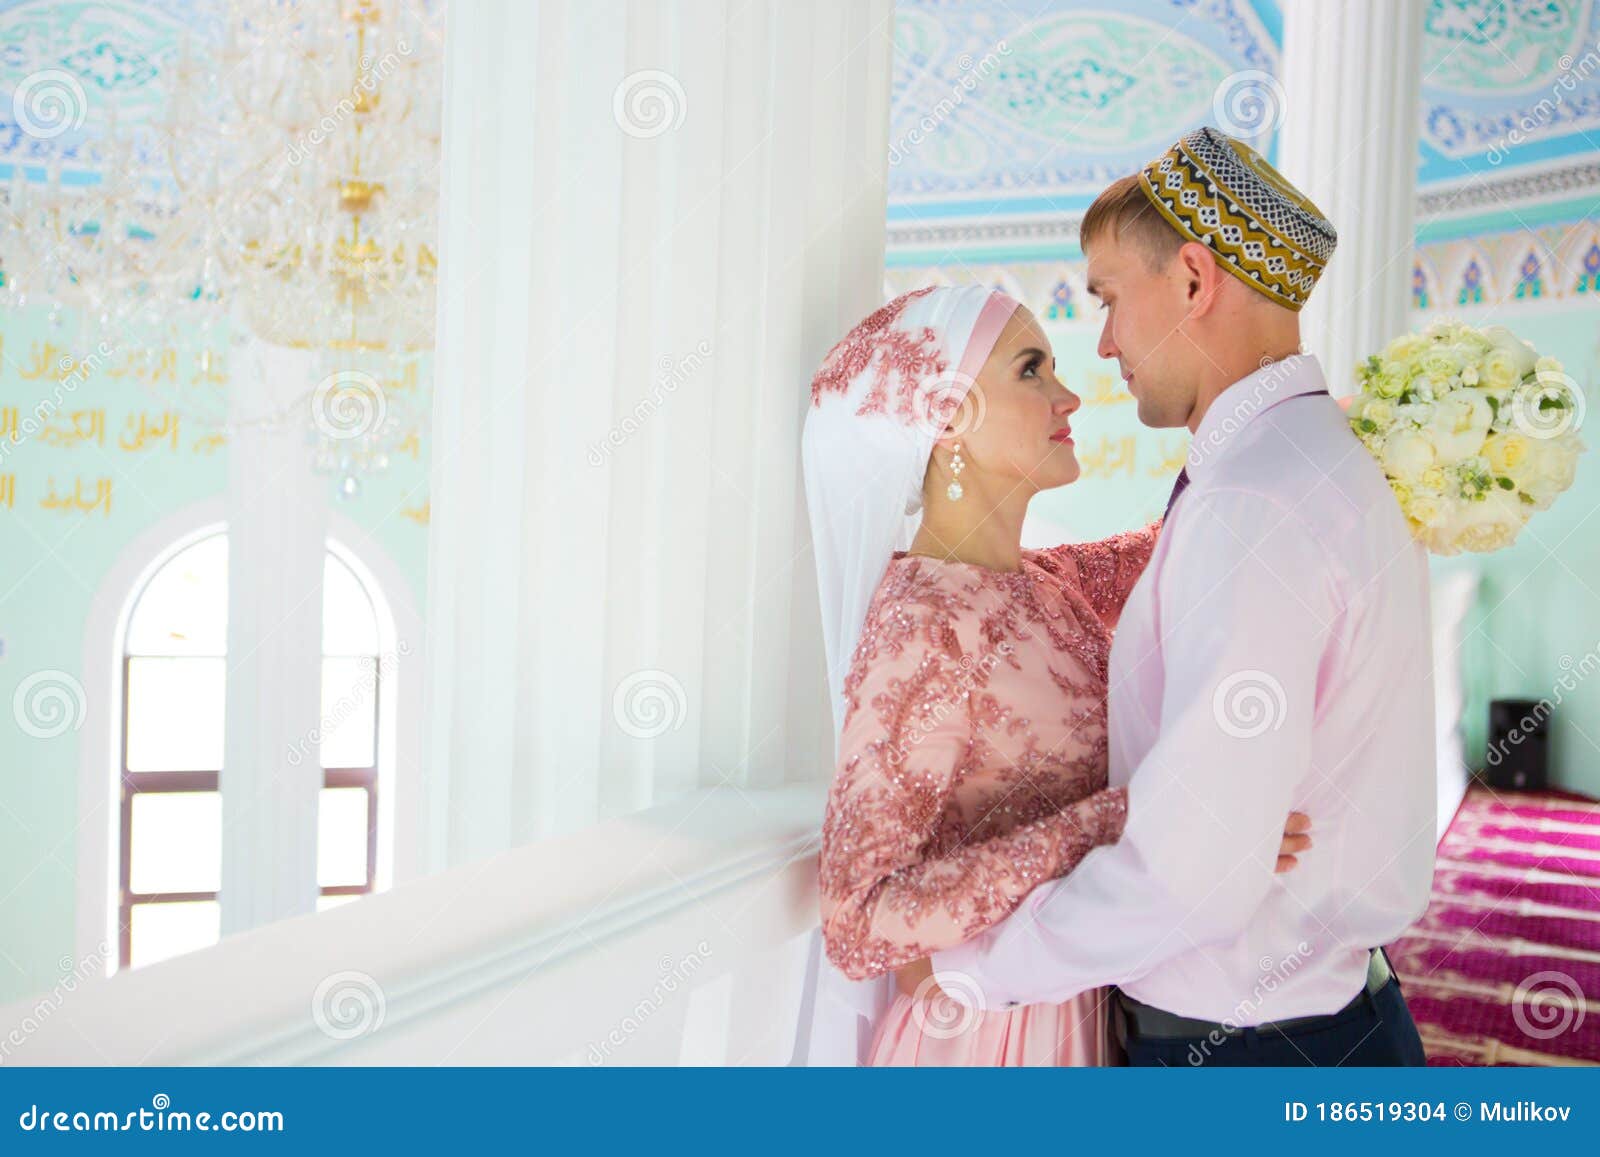 Ehe liebe islam der in zina im